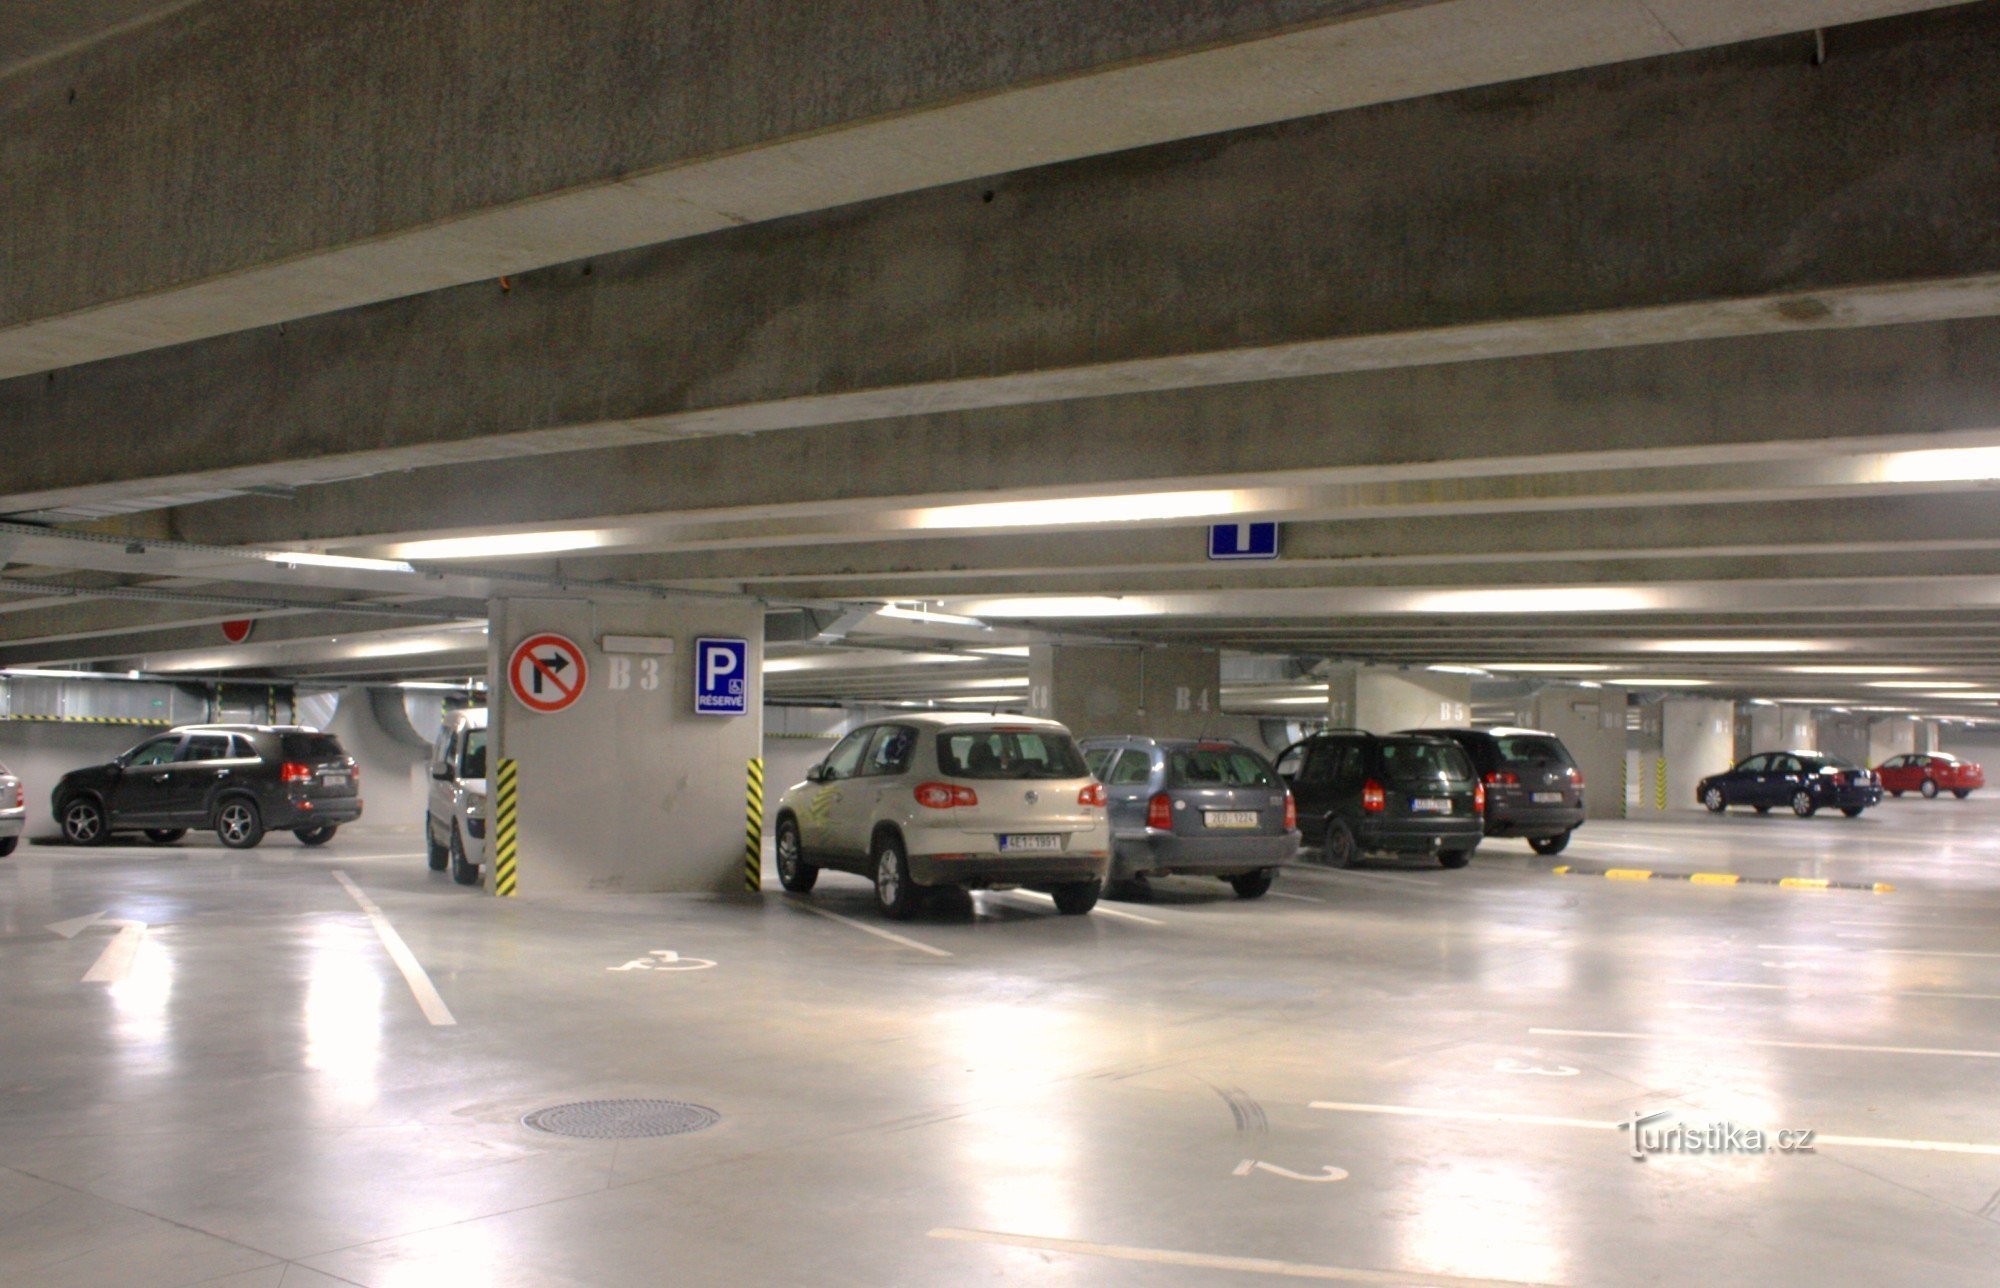 Підземний паркінг транспортного терміналу